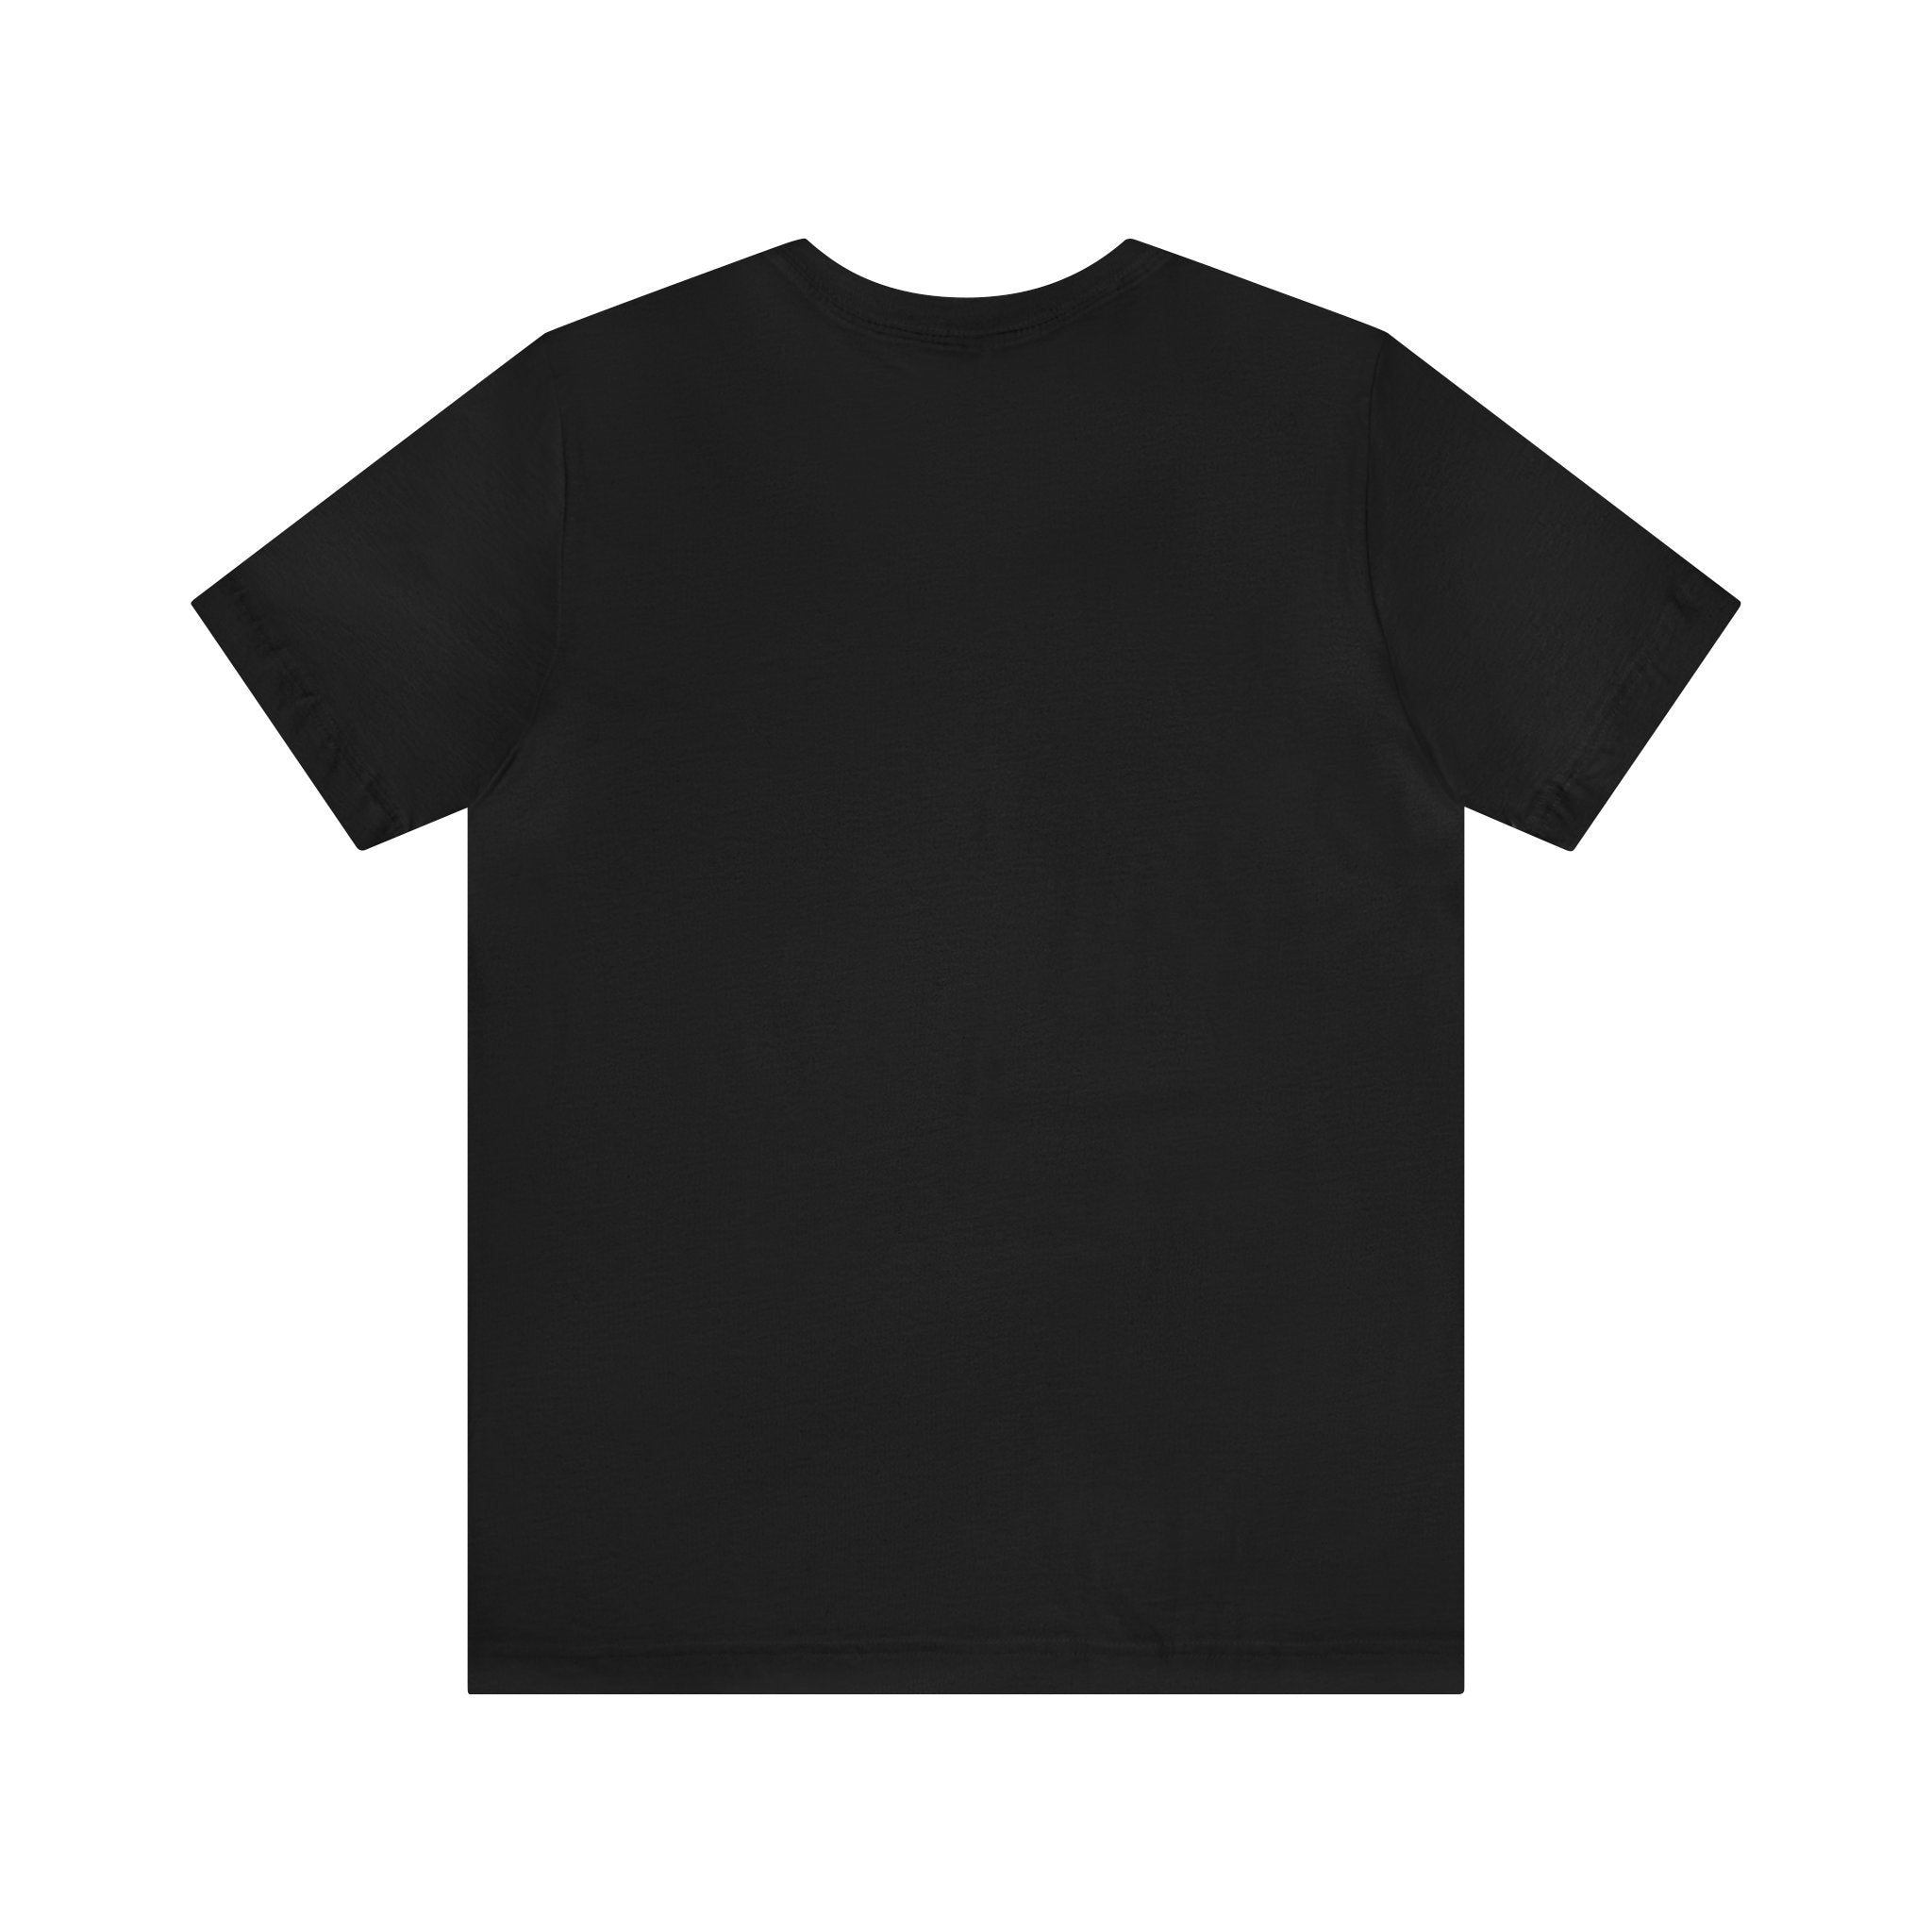 Kürbis-Tölpel-T-Shirt